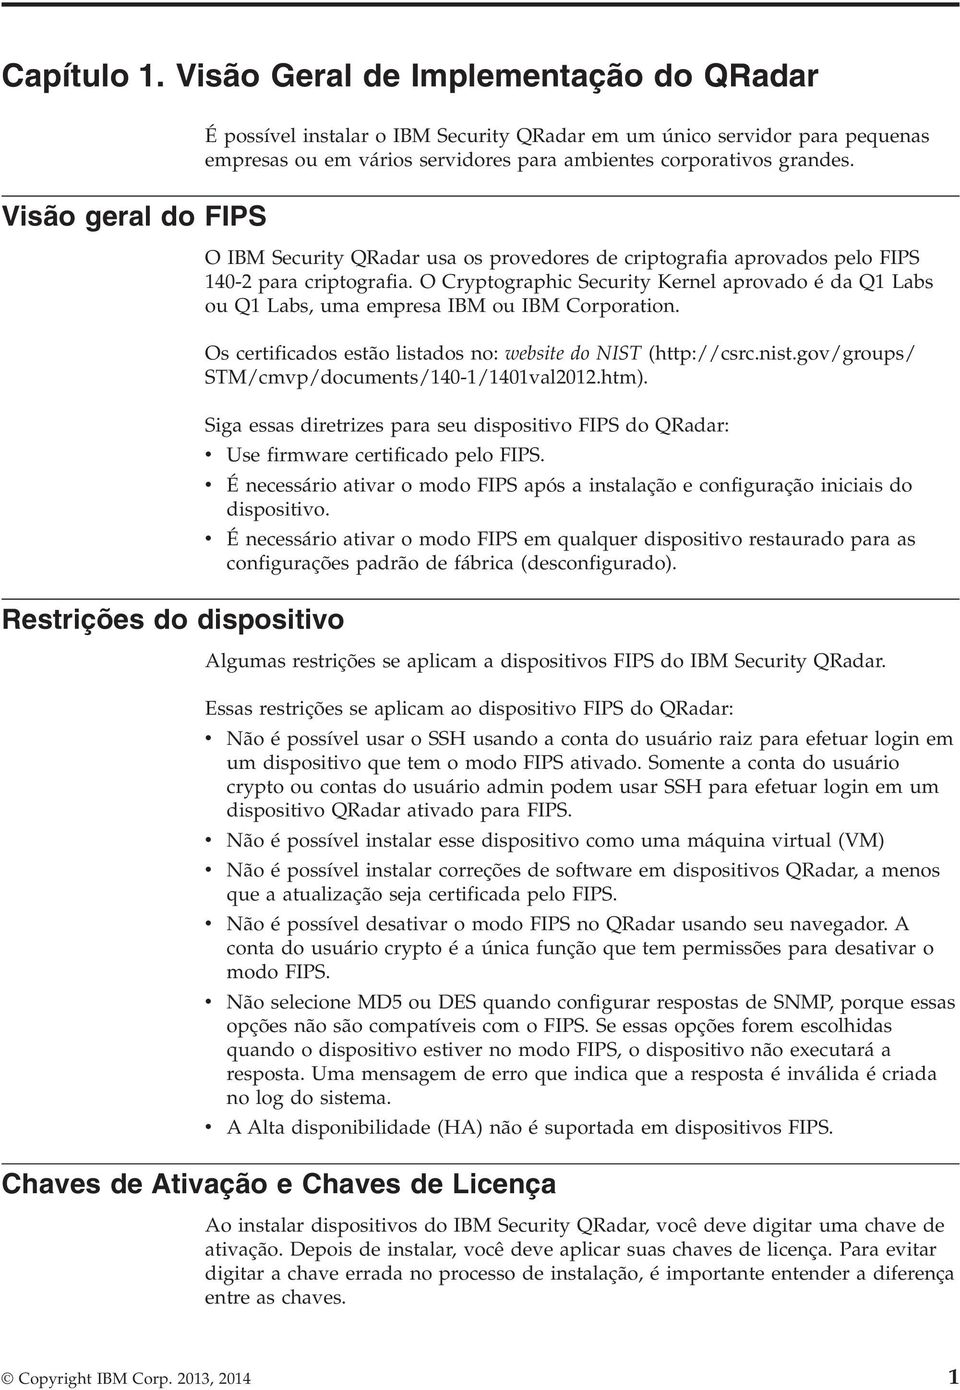 ambientes corporativos grandes. O IBM Security QRadar usa os provedores de criptografia aprovados pelo FIPS 140-2 para criptografia.